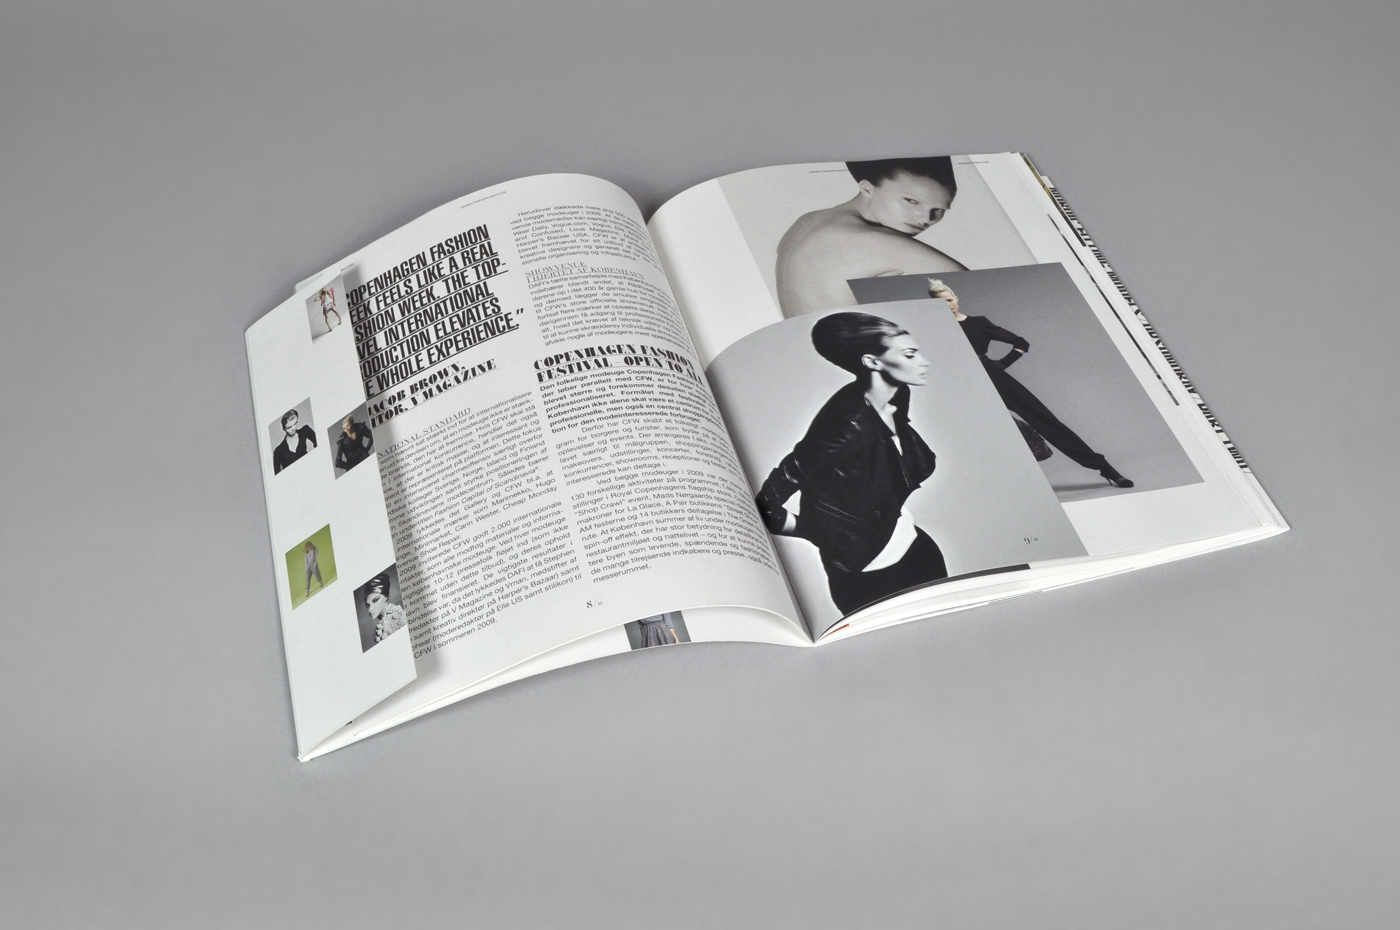 Danish Fashion Institute – Annual report 2009